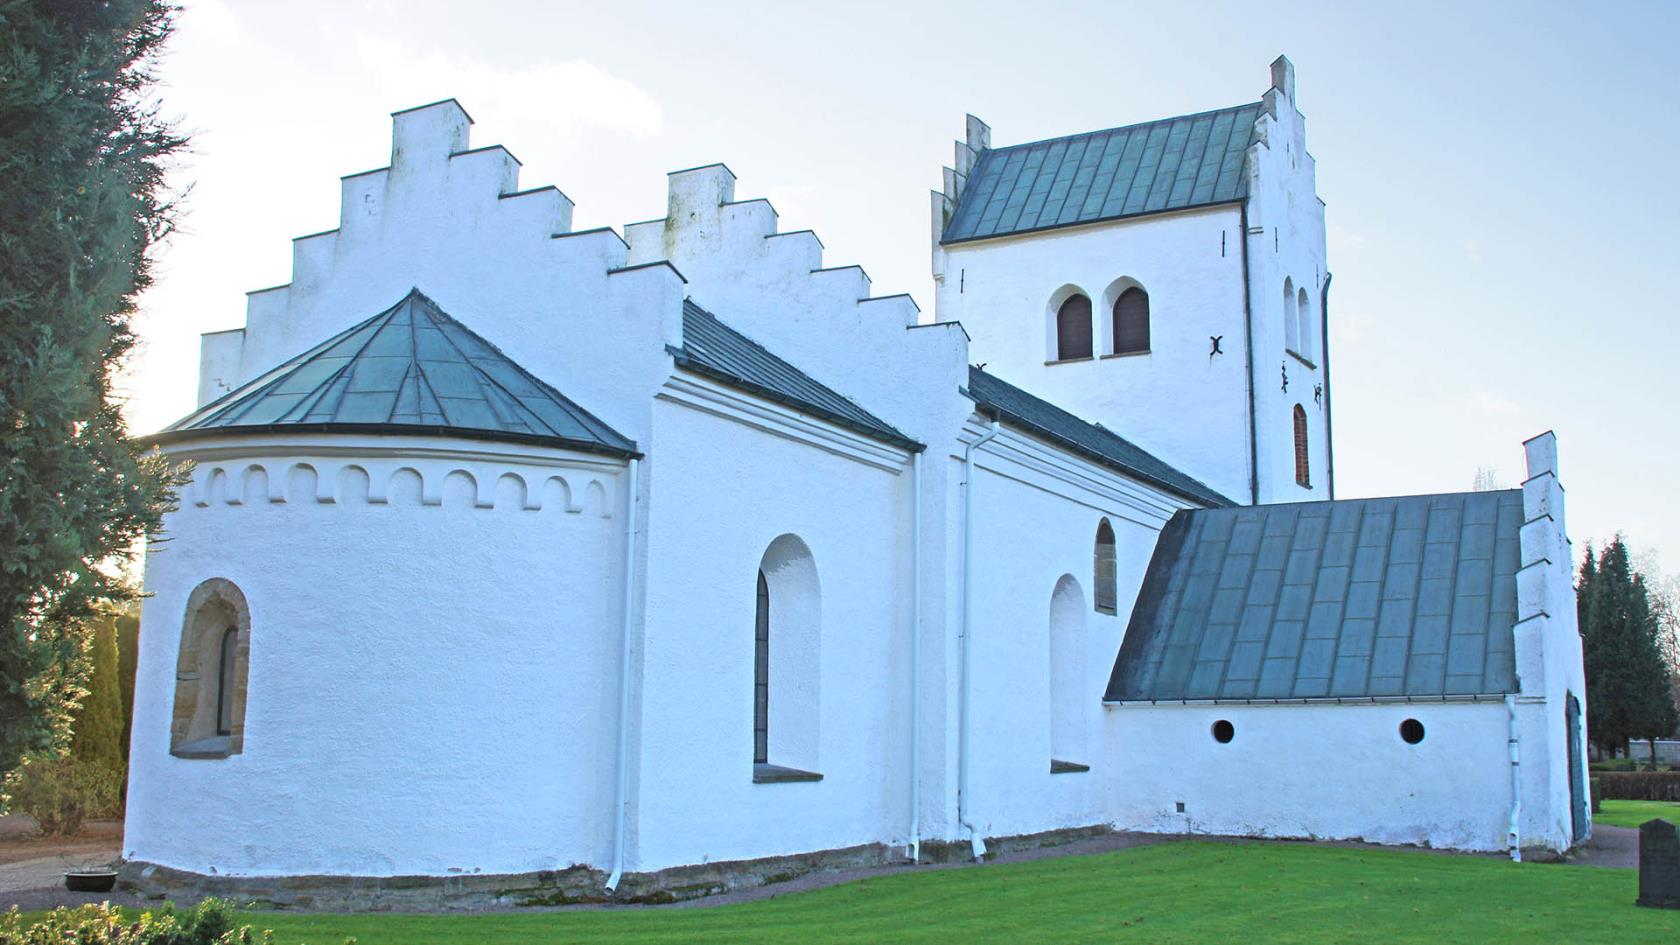 Mörarps kyrka som är byggd på 1100-talet.